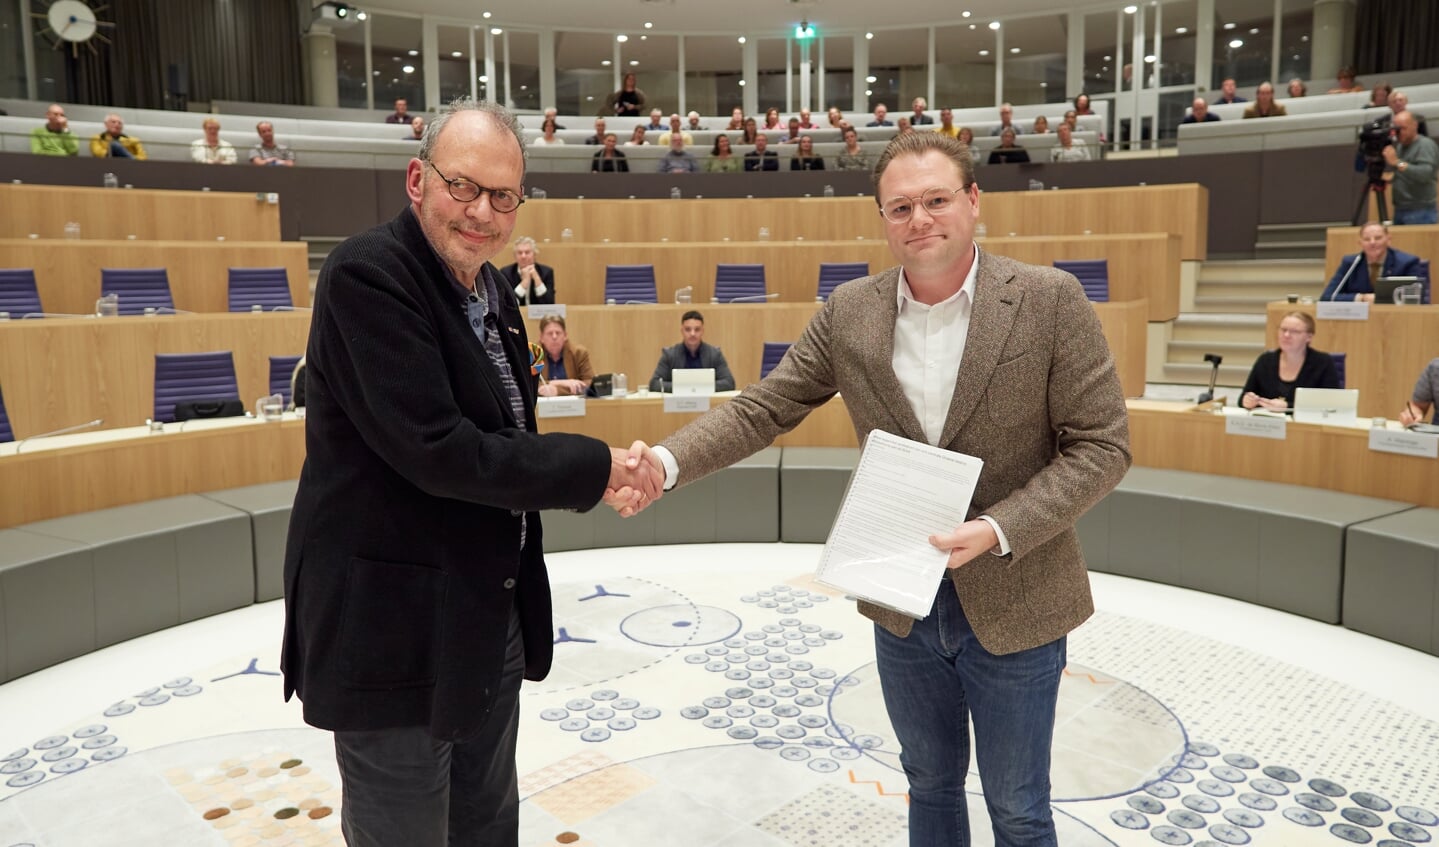 Koen Bokhorst van de gemeenteraad ontving laatst de petitie die oproept tot behoud van het Groene Veld. (Foto: aangeleverd)